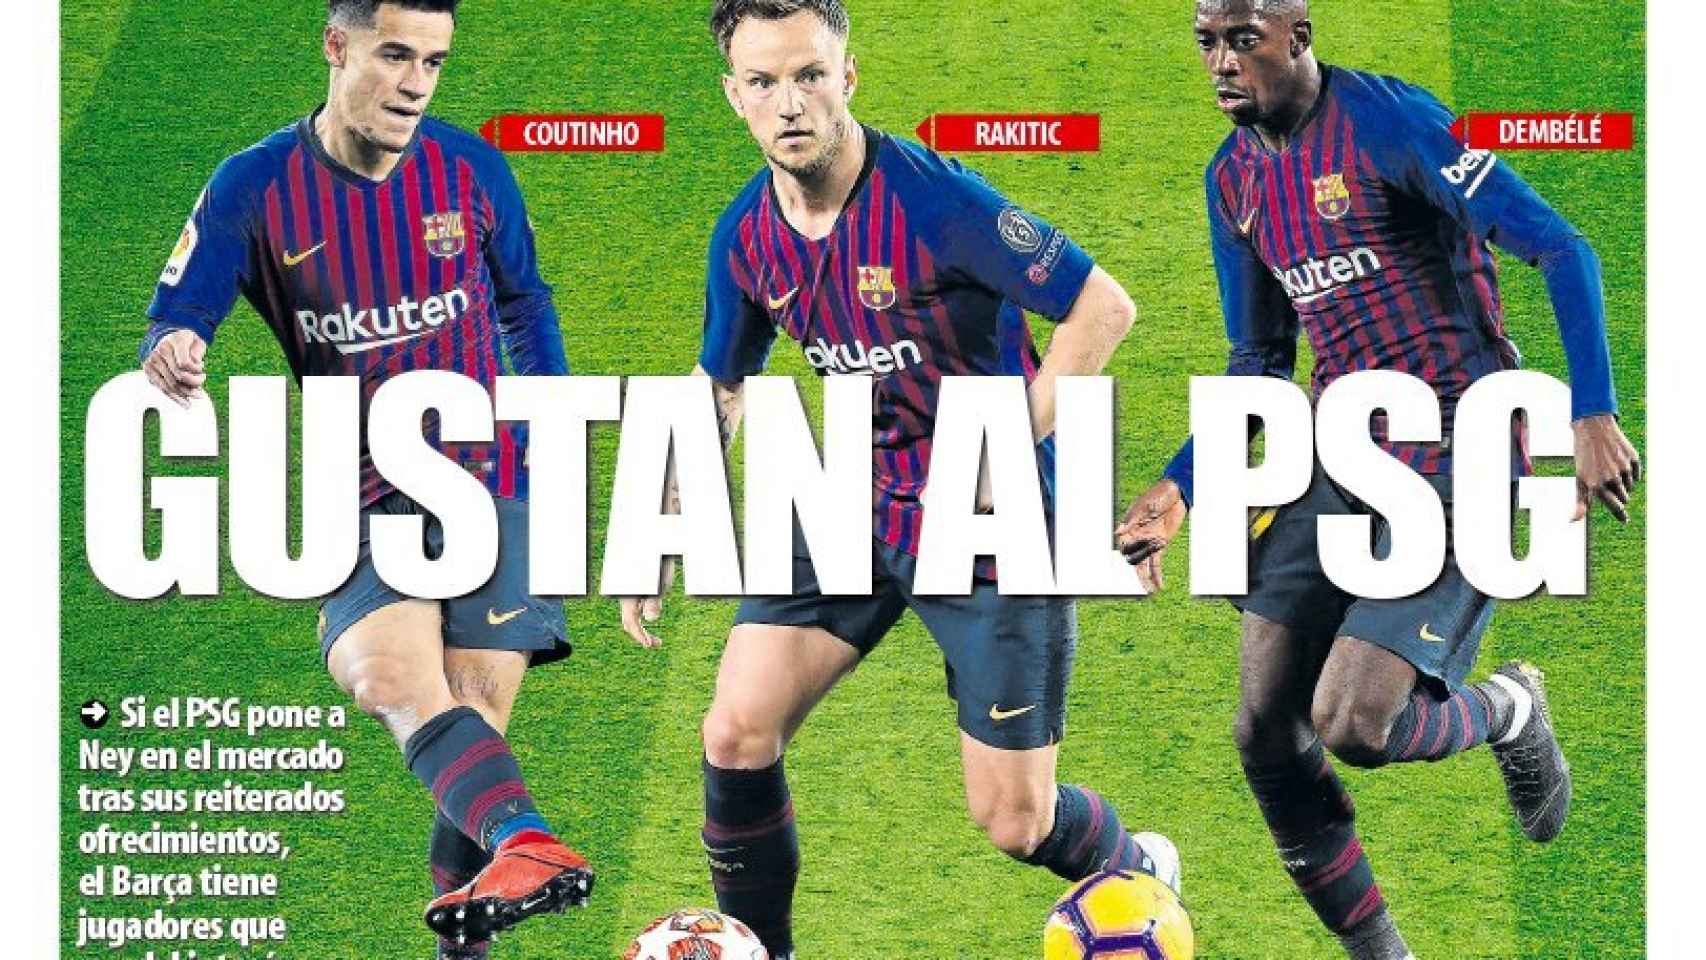 La portada del diario Mundo Deportivo (03/06/2019)